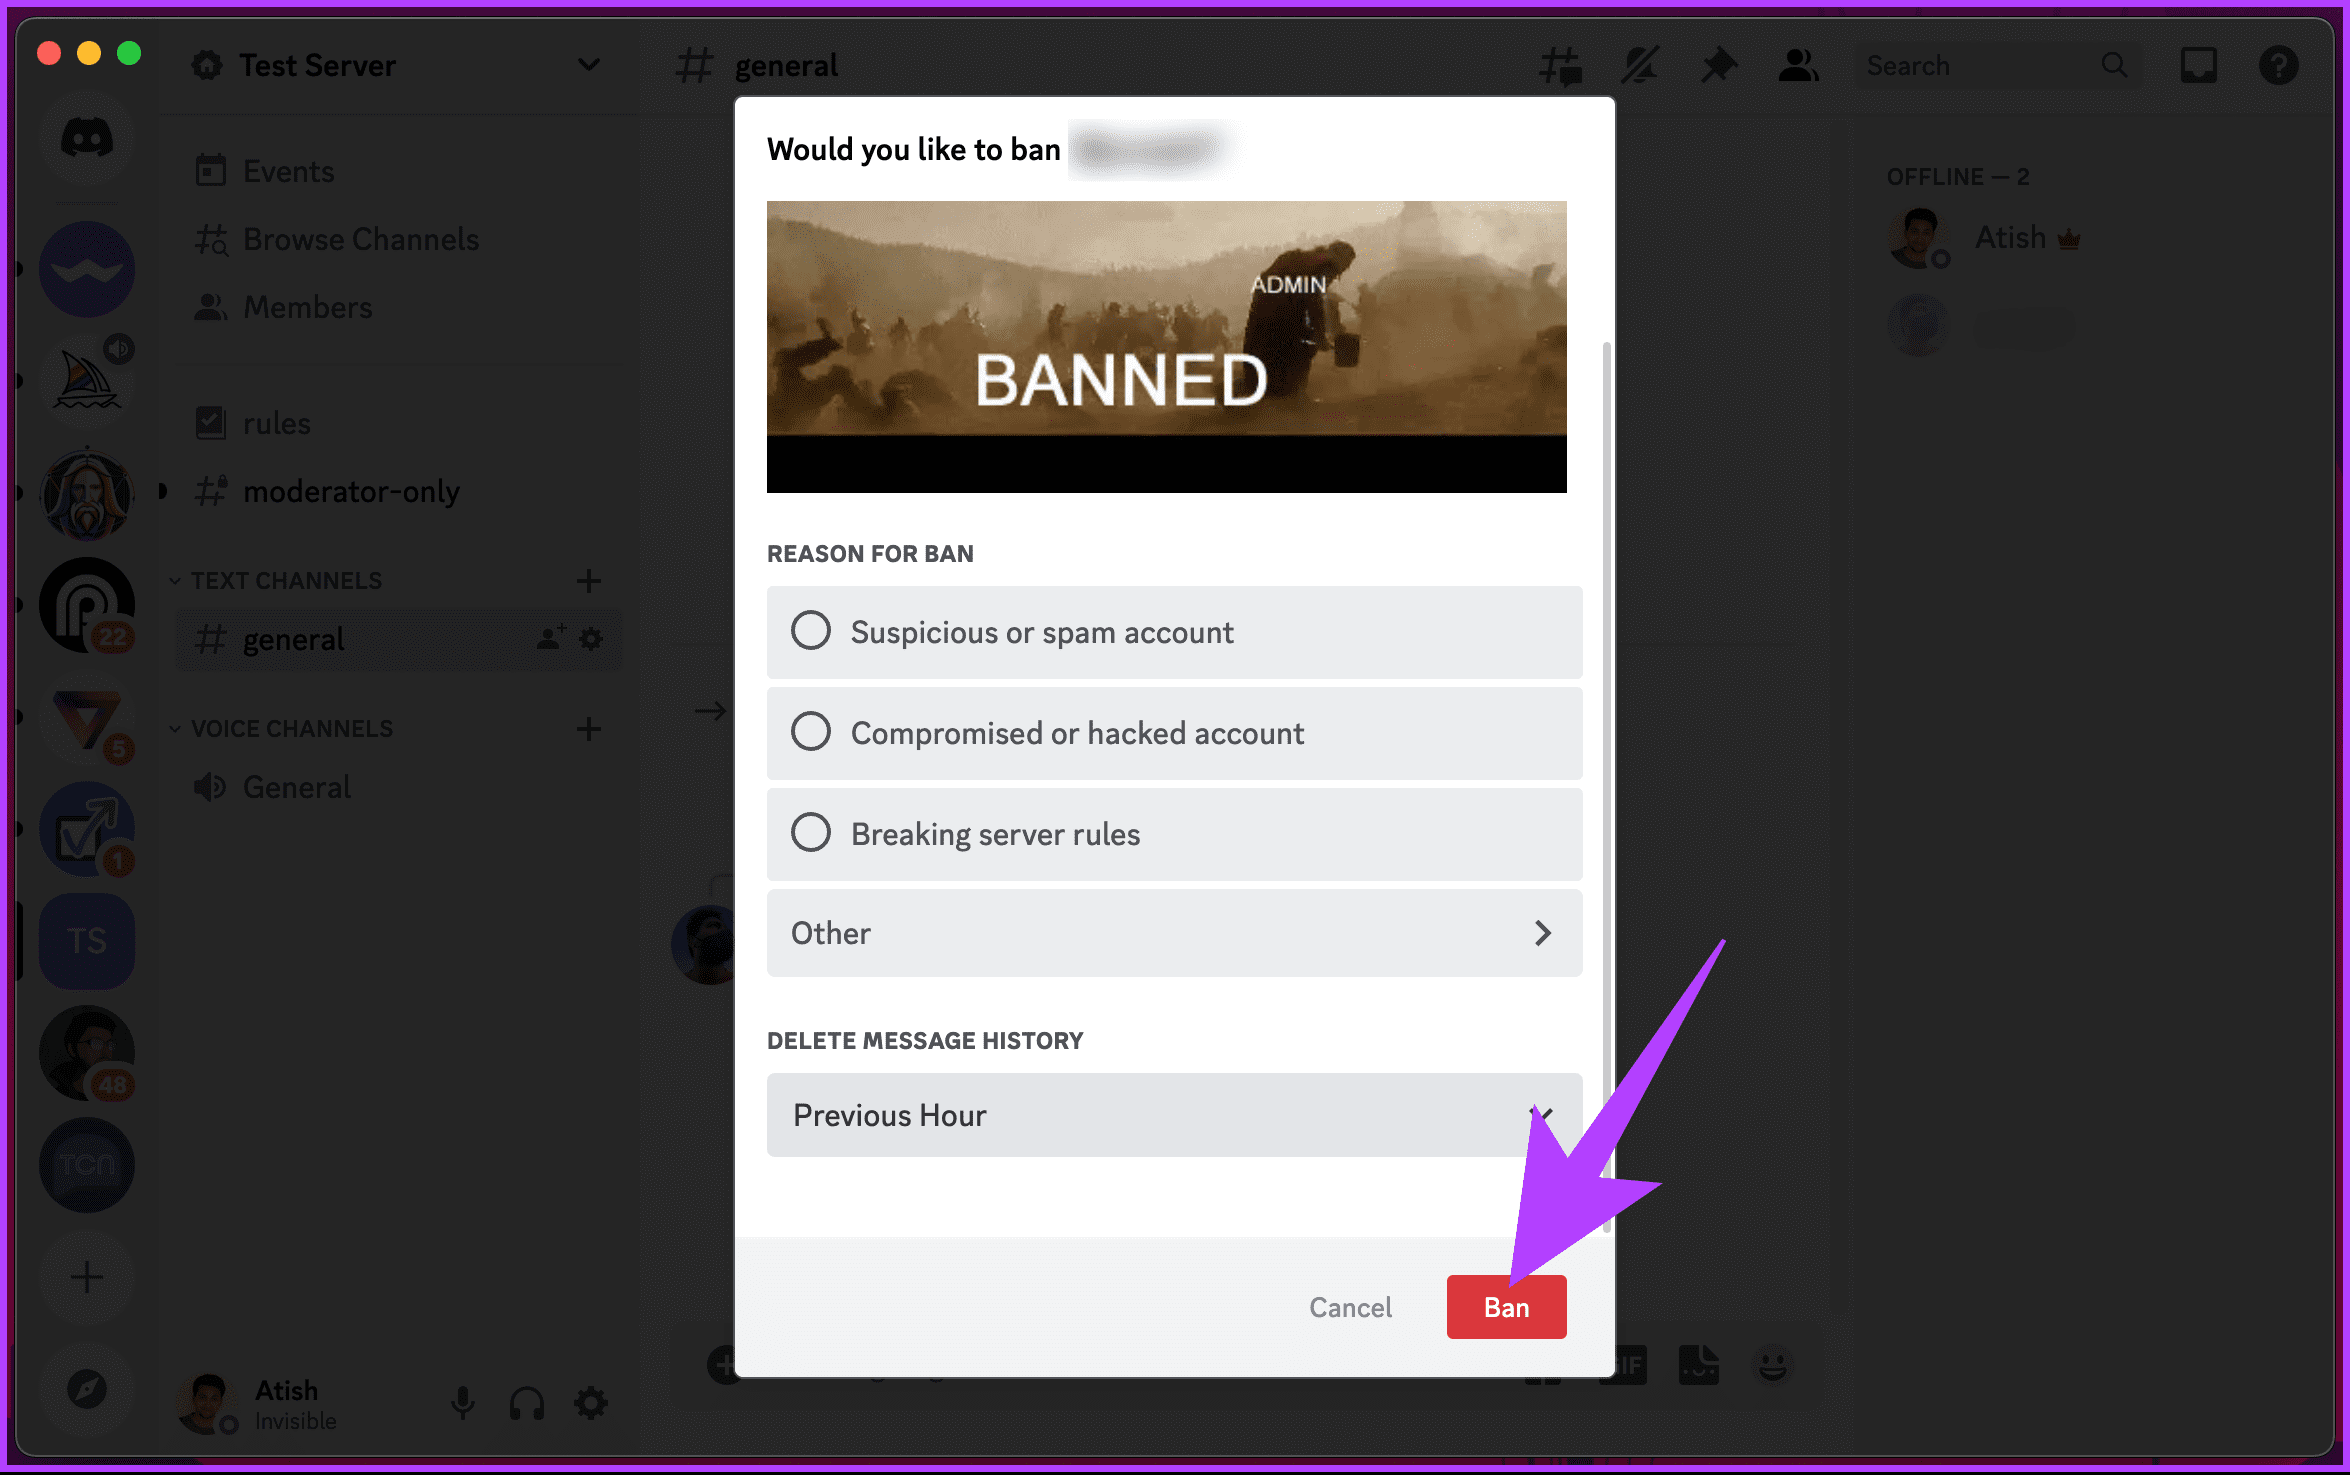 click the Ban button